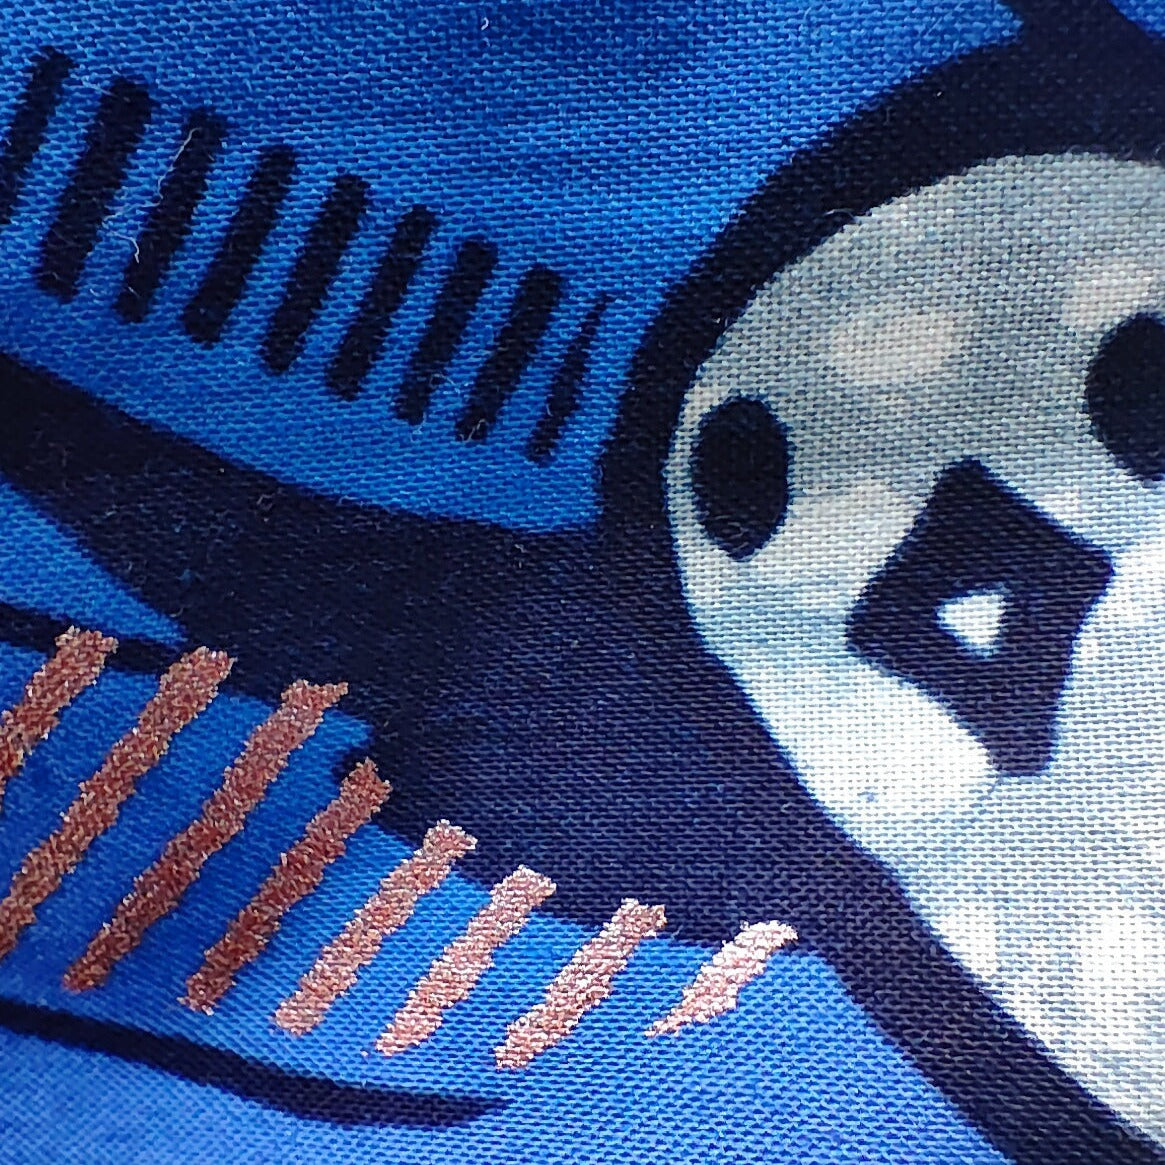 Couverture bleue en tissu wax avec motifs hirondelles